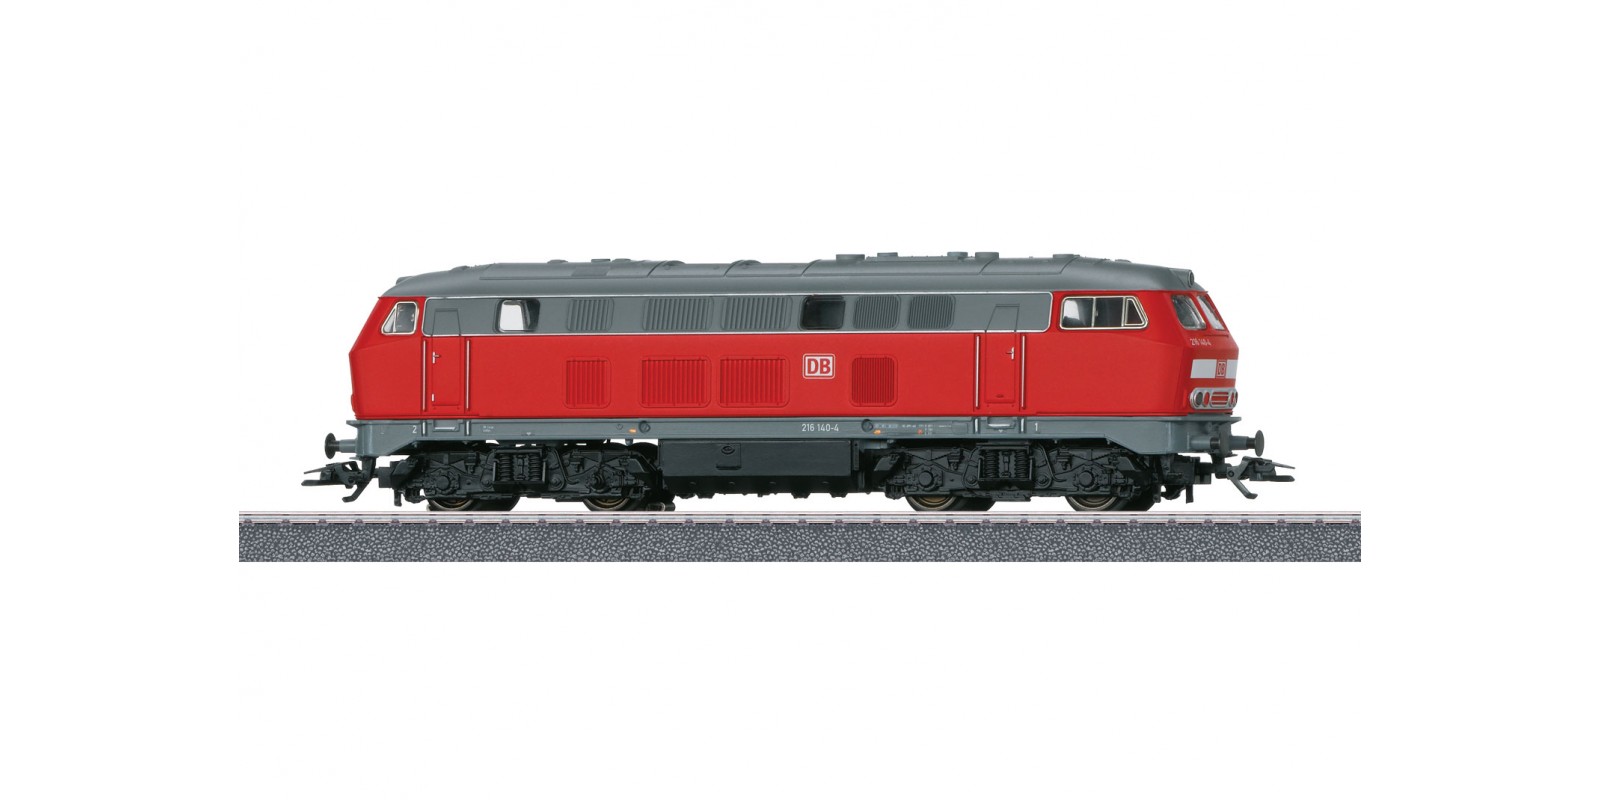 36218 Märklin Start up - Class 216 Diesel Locomotive